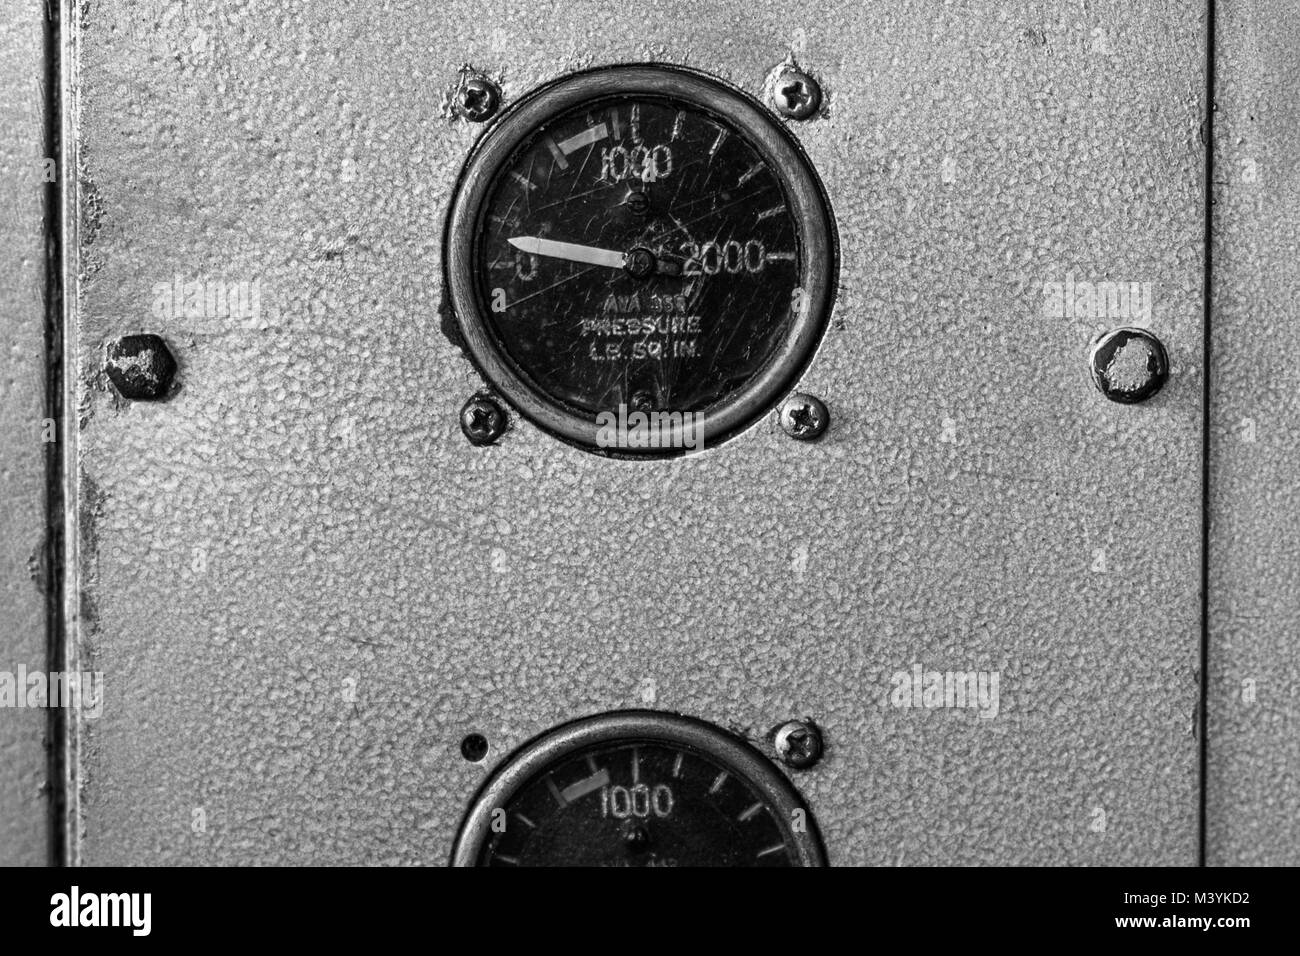 Les indicateurs de pression hydraulique sont vus dans la cabine d'un Douglas DC-3 au cours d'une vérification de maintenance de routine à l'aéroport de Villavicencio, Colombie, 8 décembre 2016. Bien que la plupart des avions DC-3 de la série ont été construit en 1940, aujourd'hui, presque 80 ans après, certains d'entre eux continuent à voler dans un service quotidien, traversant les savanes et les jungles sans fin dans le dans le sud-est de la Colombie. Le transport de personnes, de l'épicerie, de l'élevage, ou même de petits véhicules, un avion américain légendaire est parfois le seul lien entre les villages de la jungle et le reste du monde. La D Banque D'Images